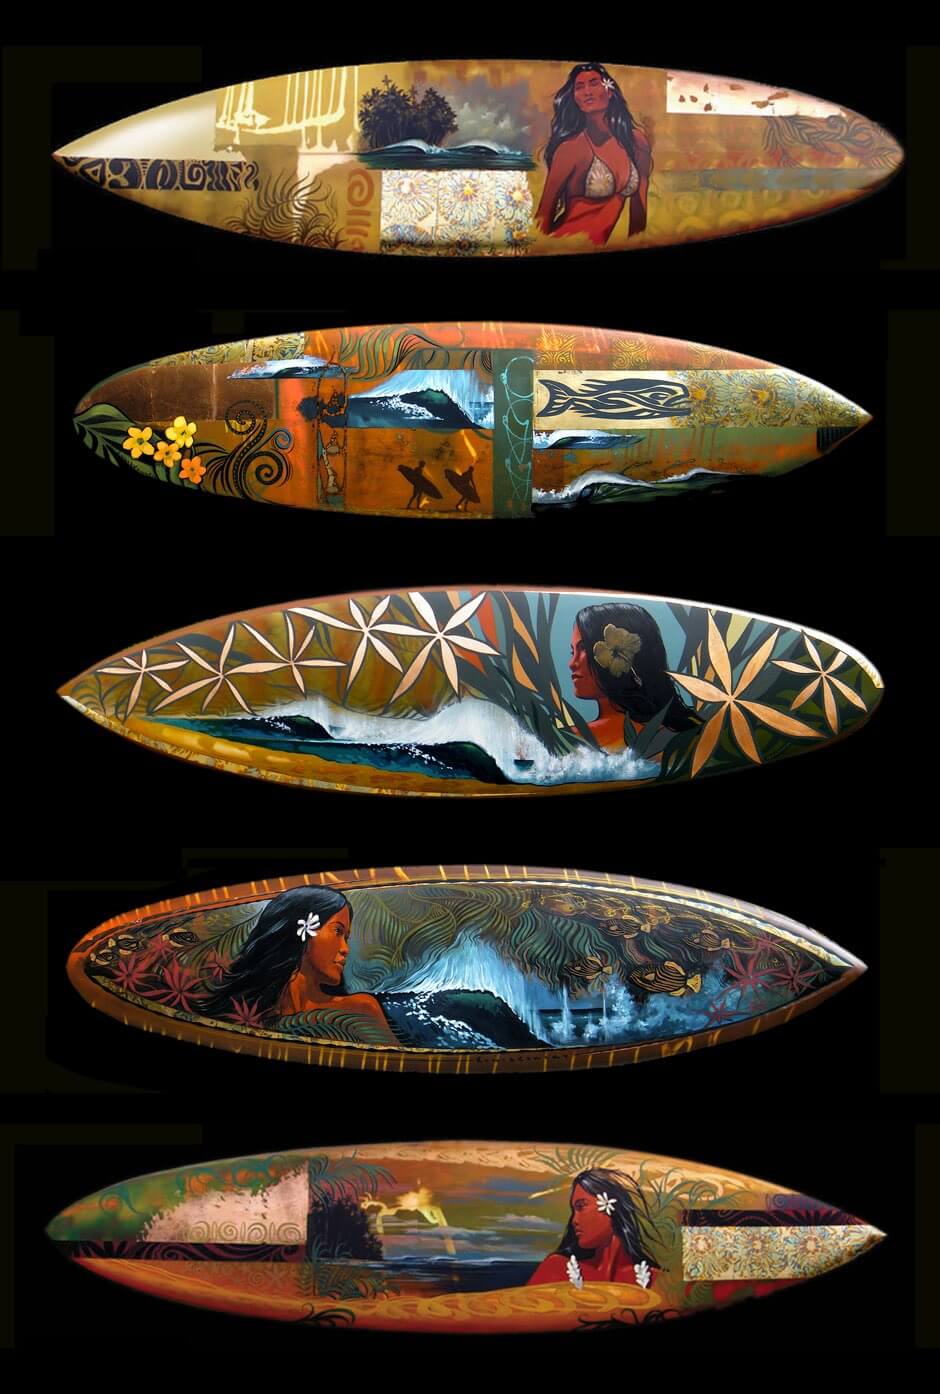 Surfboard art by Wade Koniakowsky